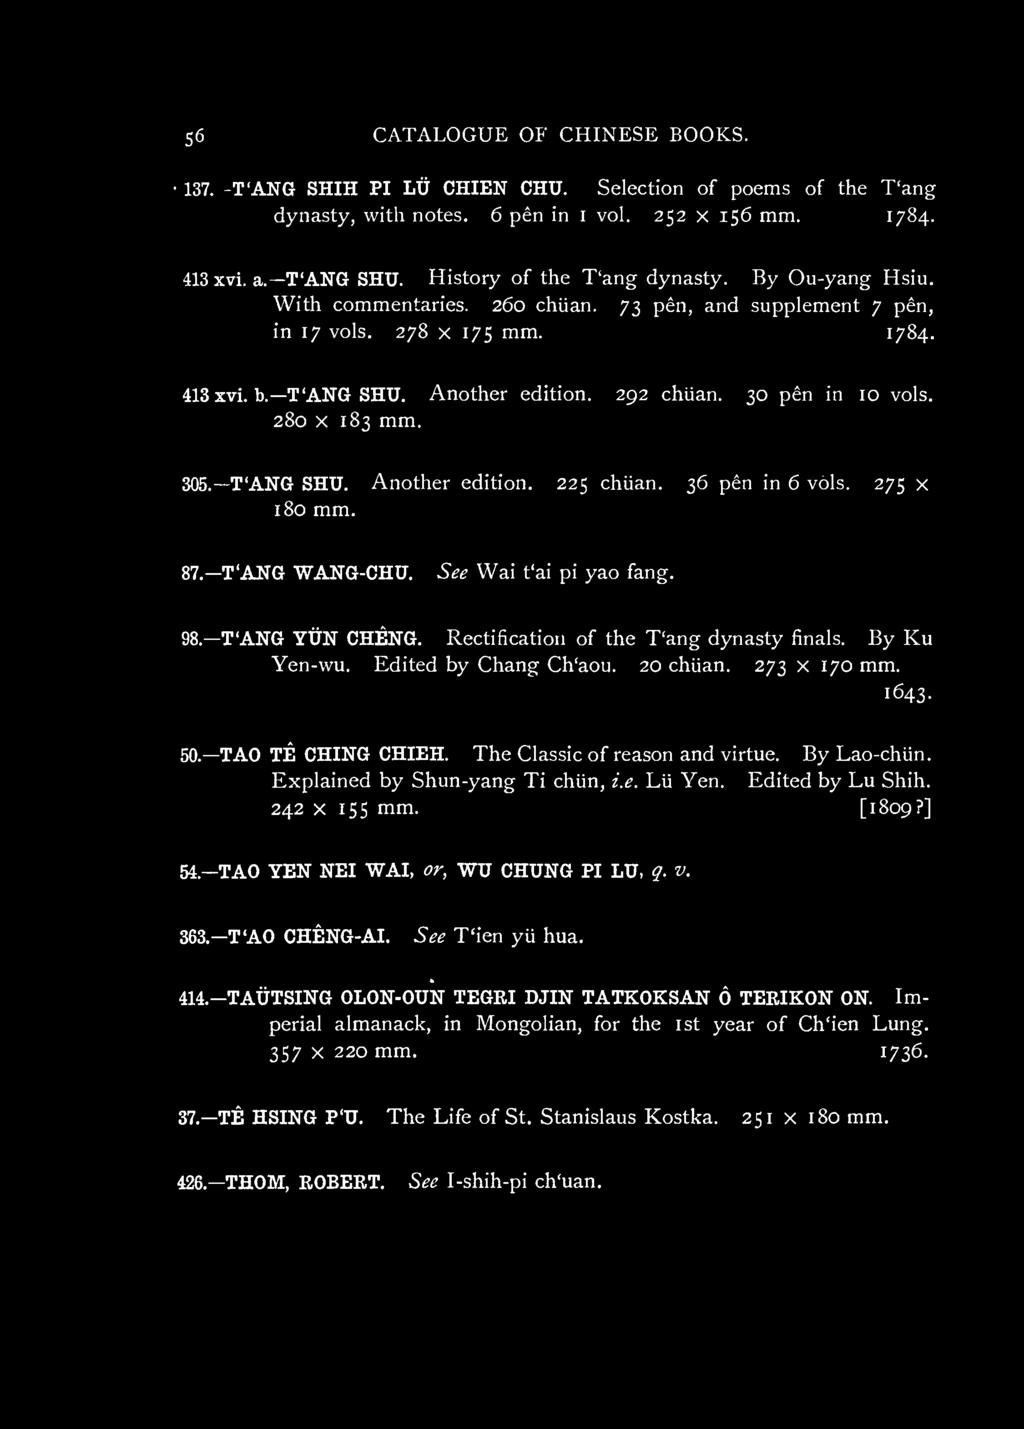 Explained by Shun-yang Ti chiin, i.e. Lii Yen. Edited by Lu Shih. 242 X 15s mm. [1809?] 54.-TAO YEN NEI WAI, or, WU CHUNG PI LU, q. v. 363.-T'AO CHENG-AI. See T'ien yu hua. 414.